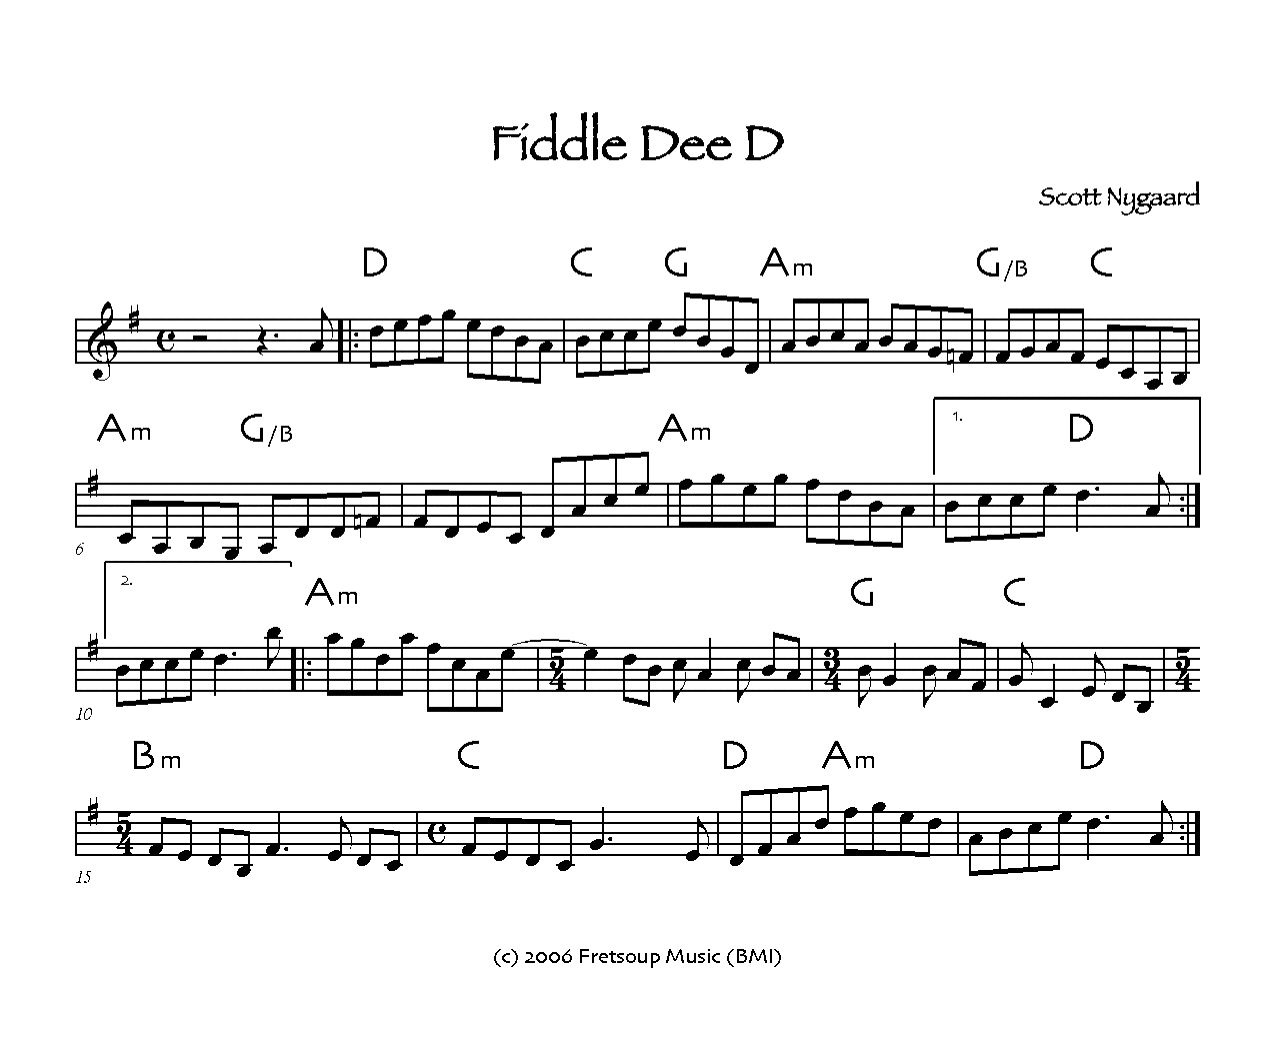 [Fiddle+Dee+D.jpg]